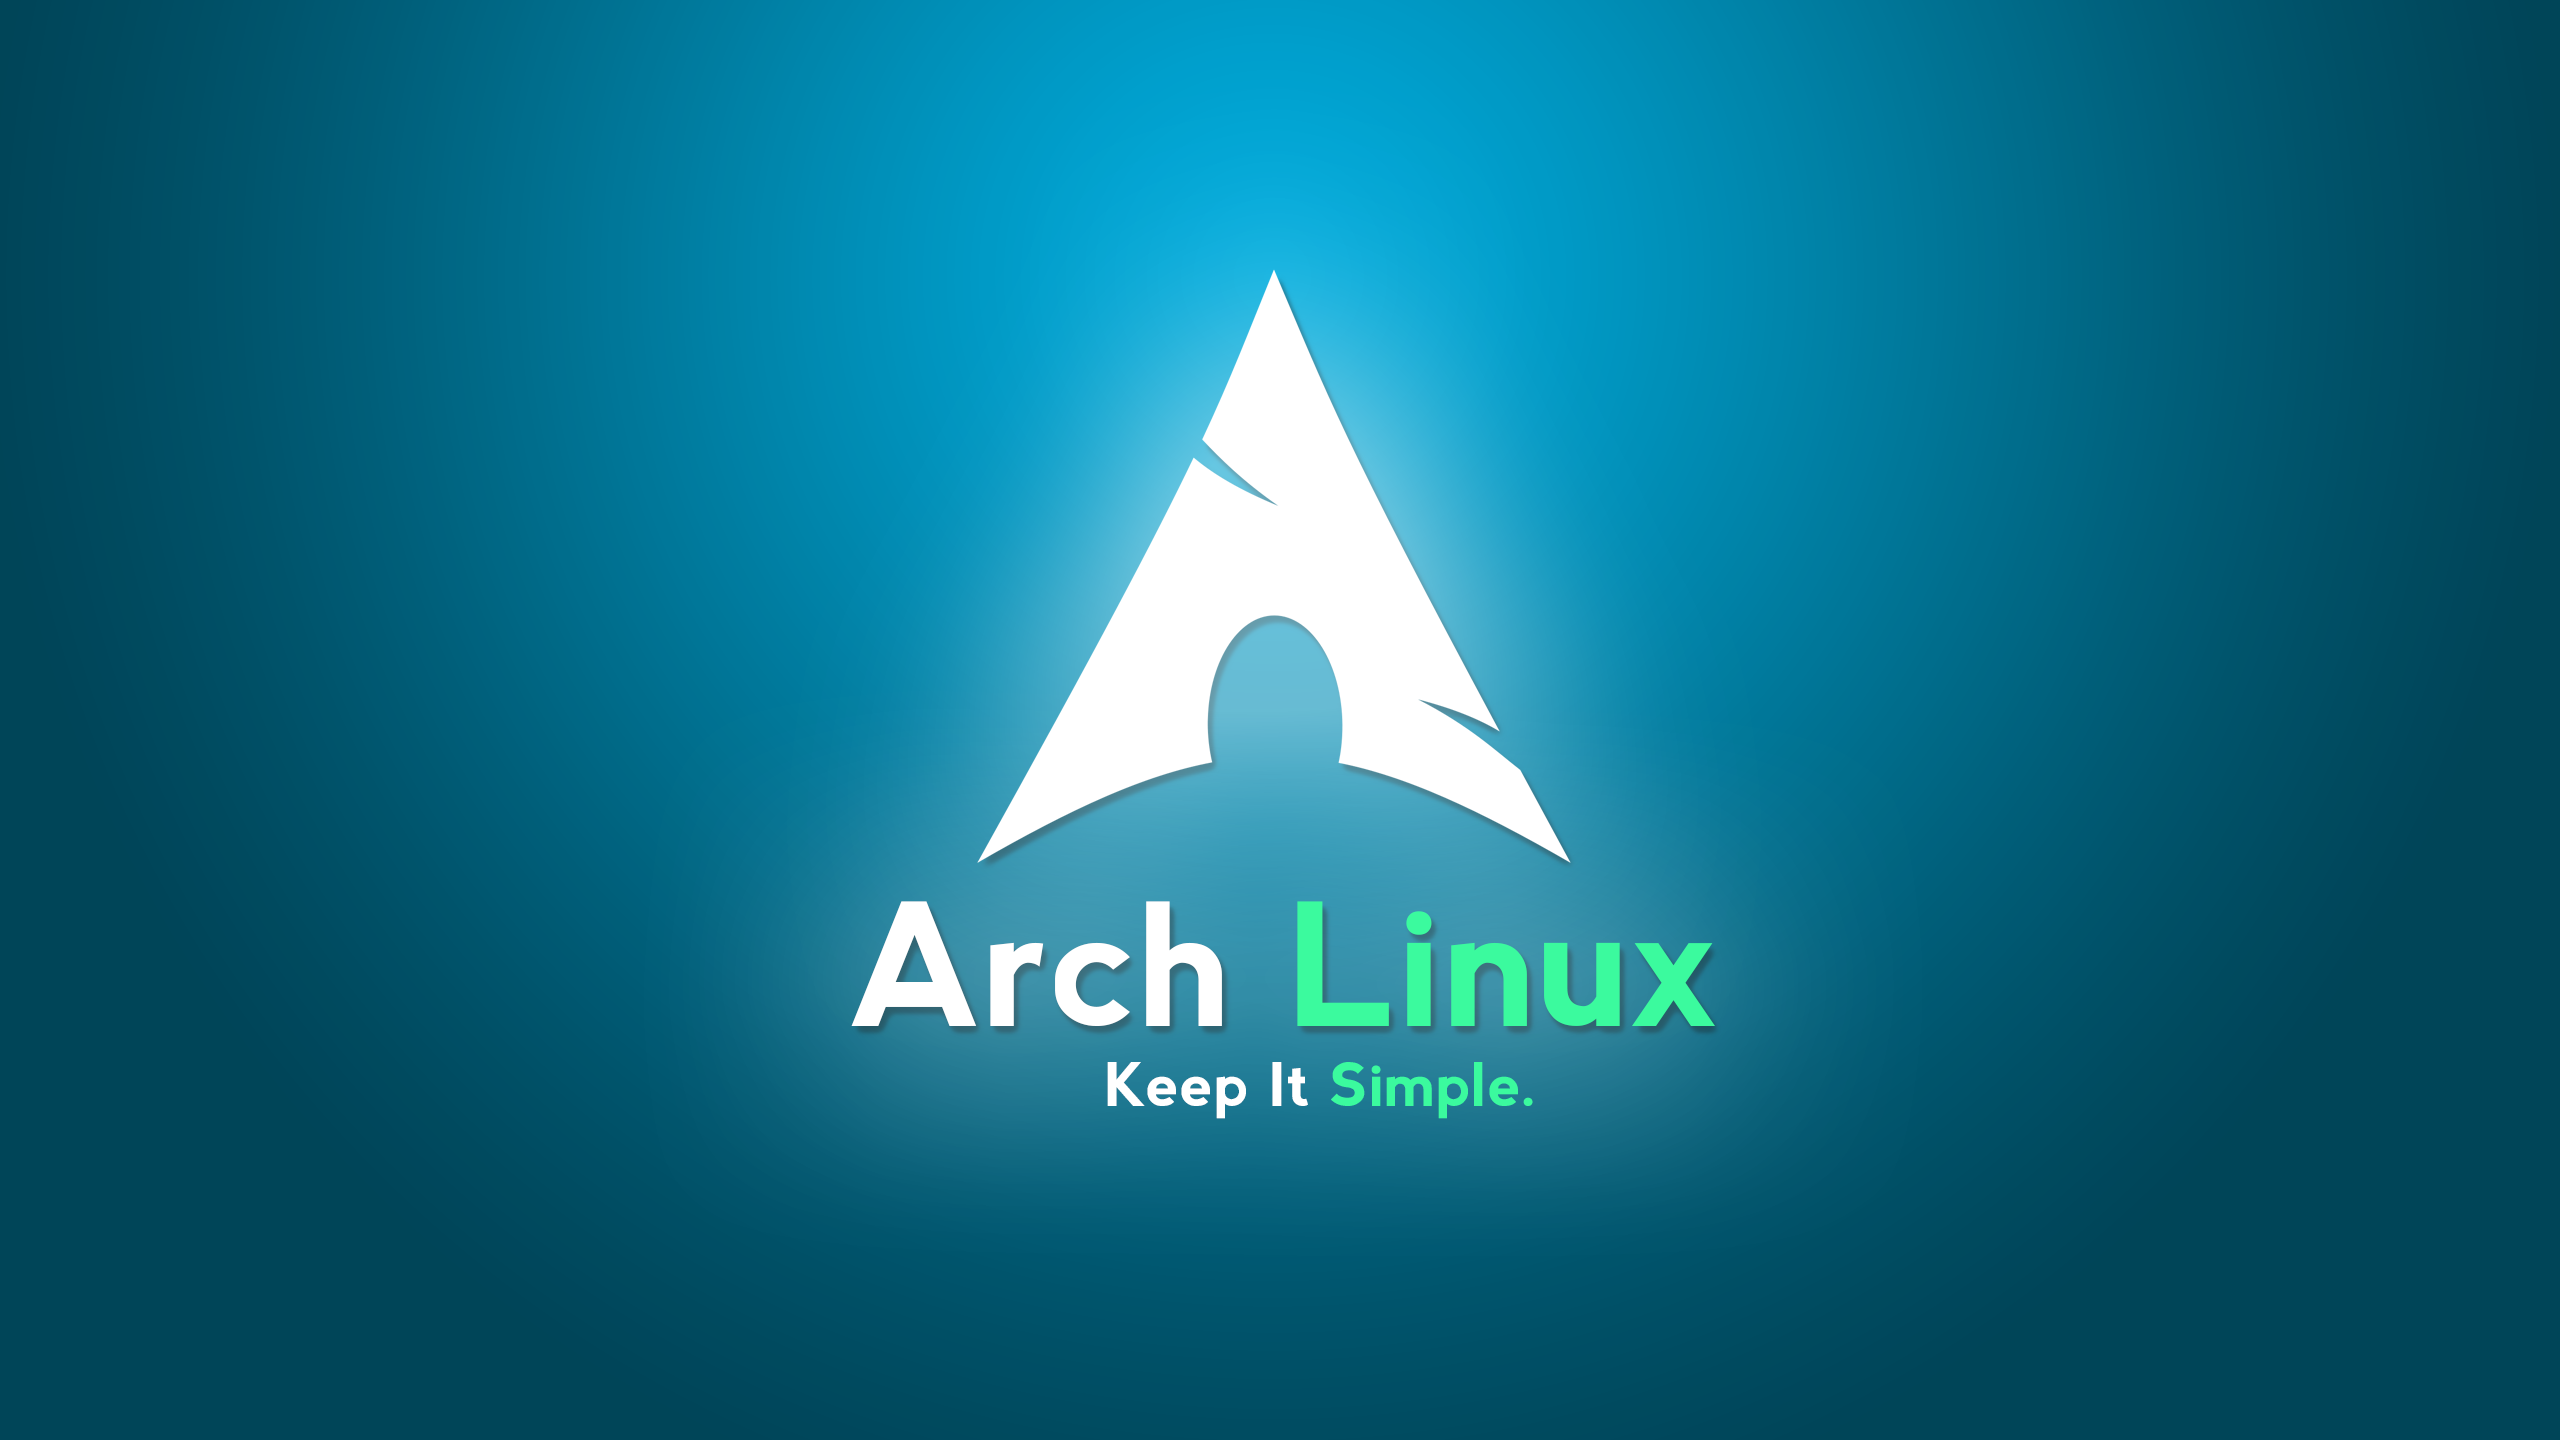 arch linux wallpaper,logo,graphic design,aqua,font,graphics